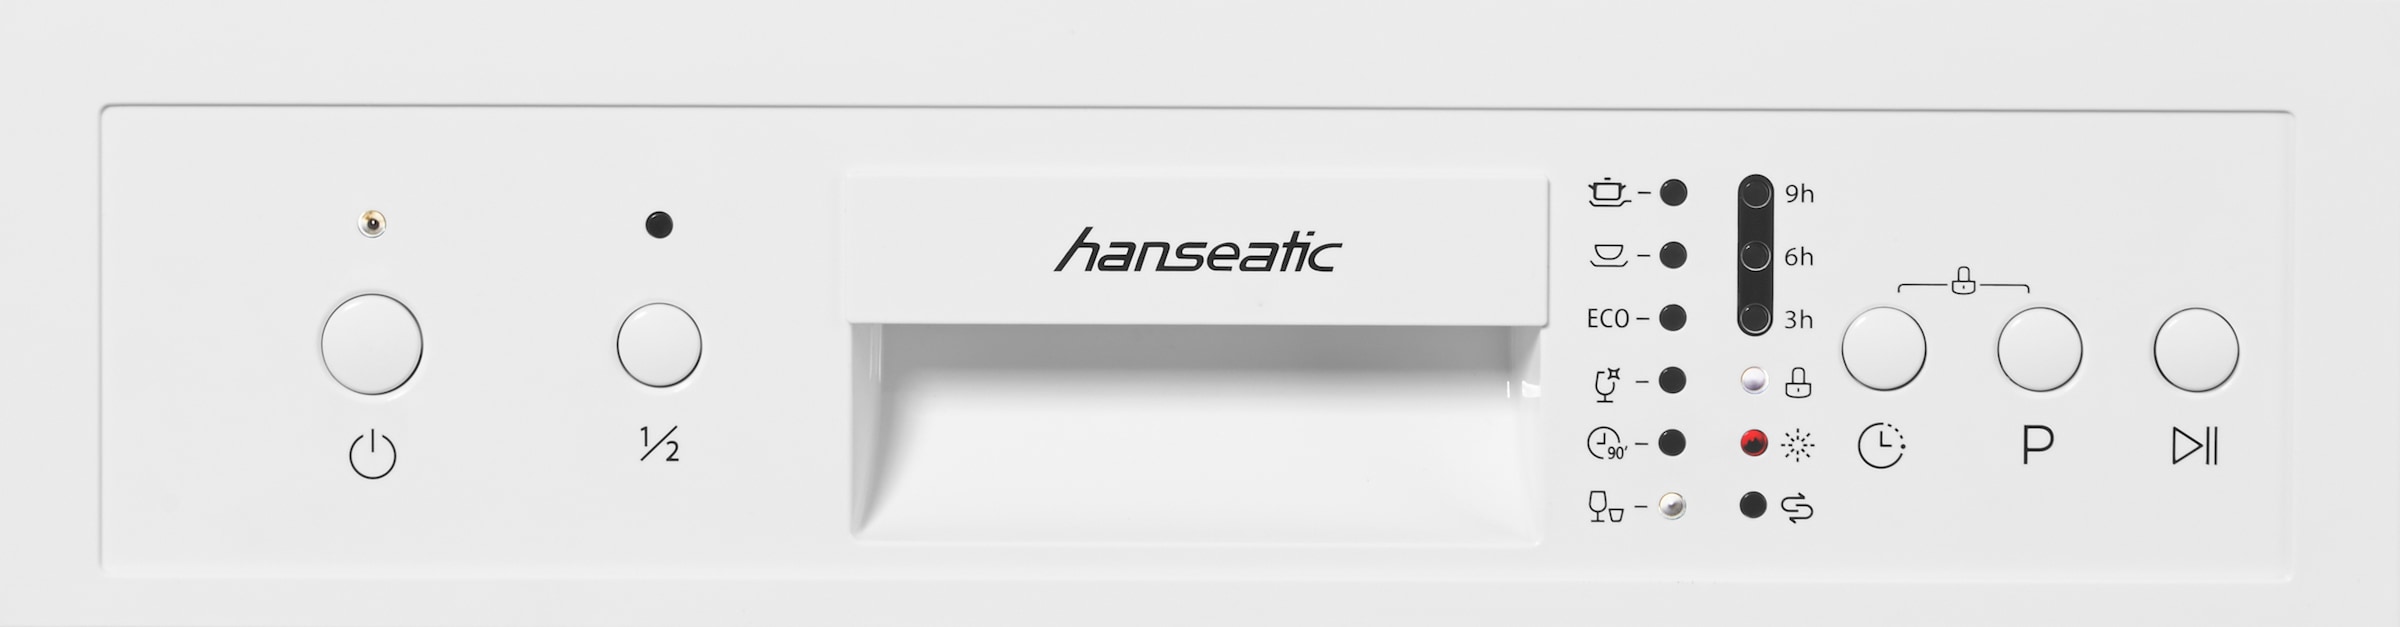 Hanseatic HG4585E97636W, jetzt »HG4585E97636W«, Standgeschirrspüler kaufen Maßgedecke 9 OTTO bei